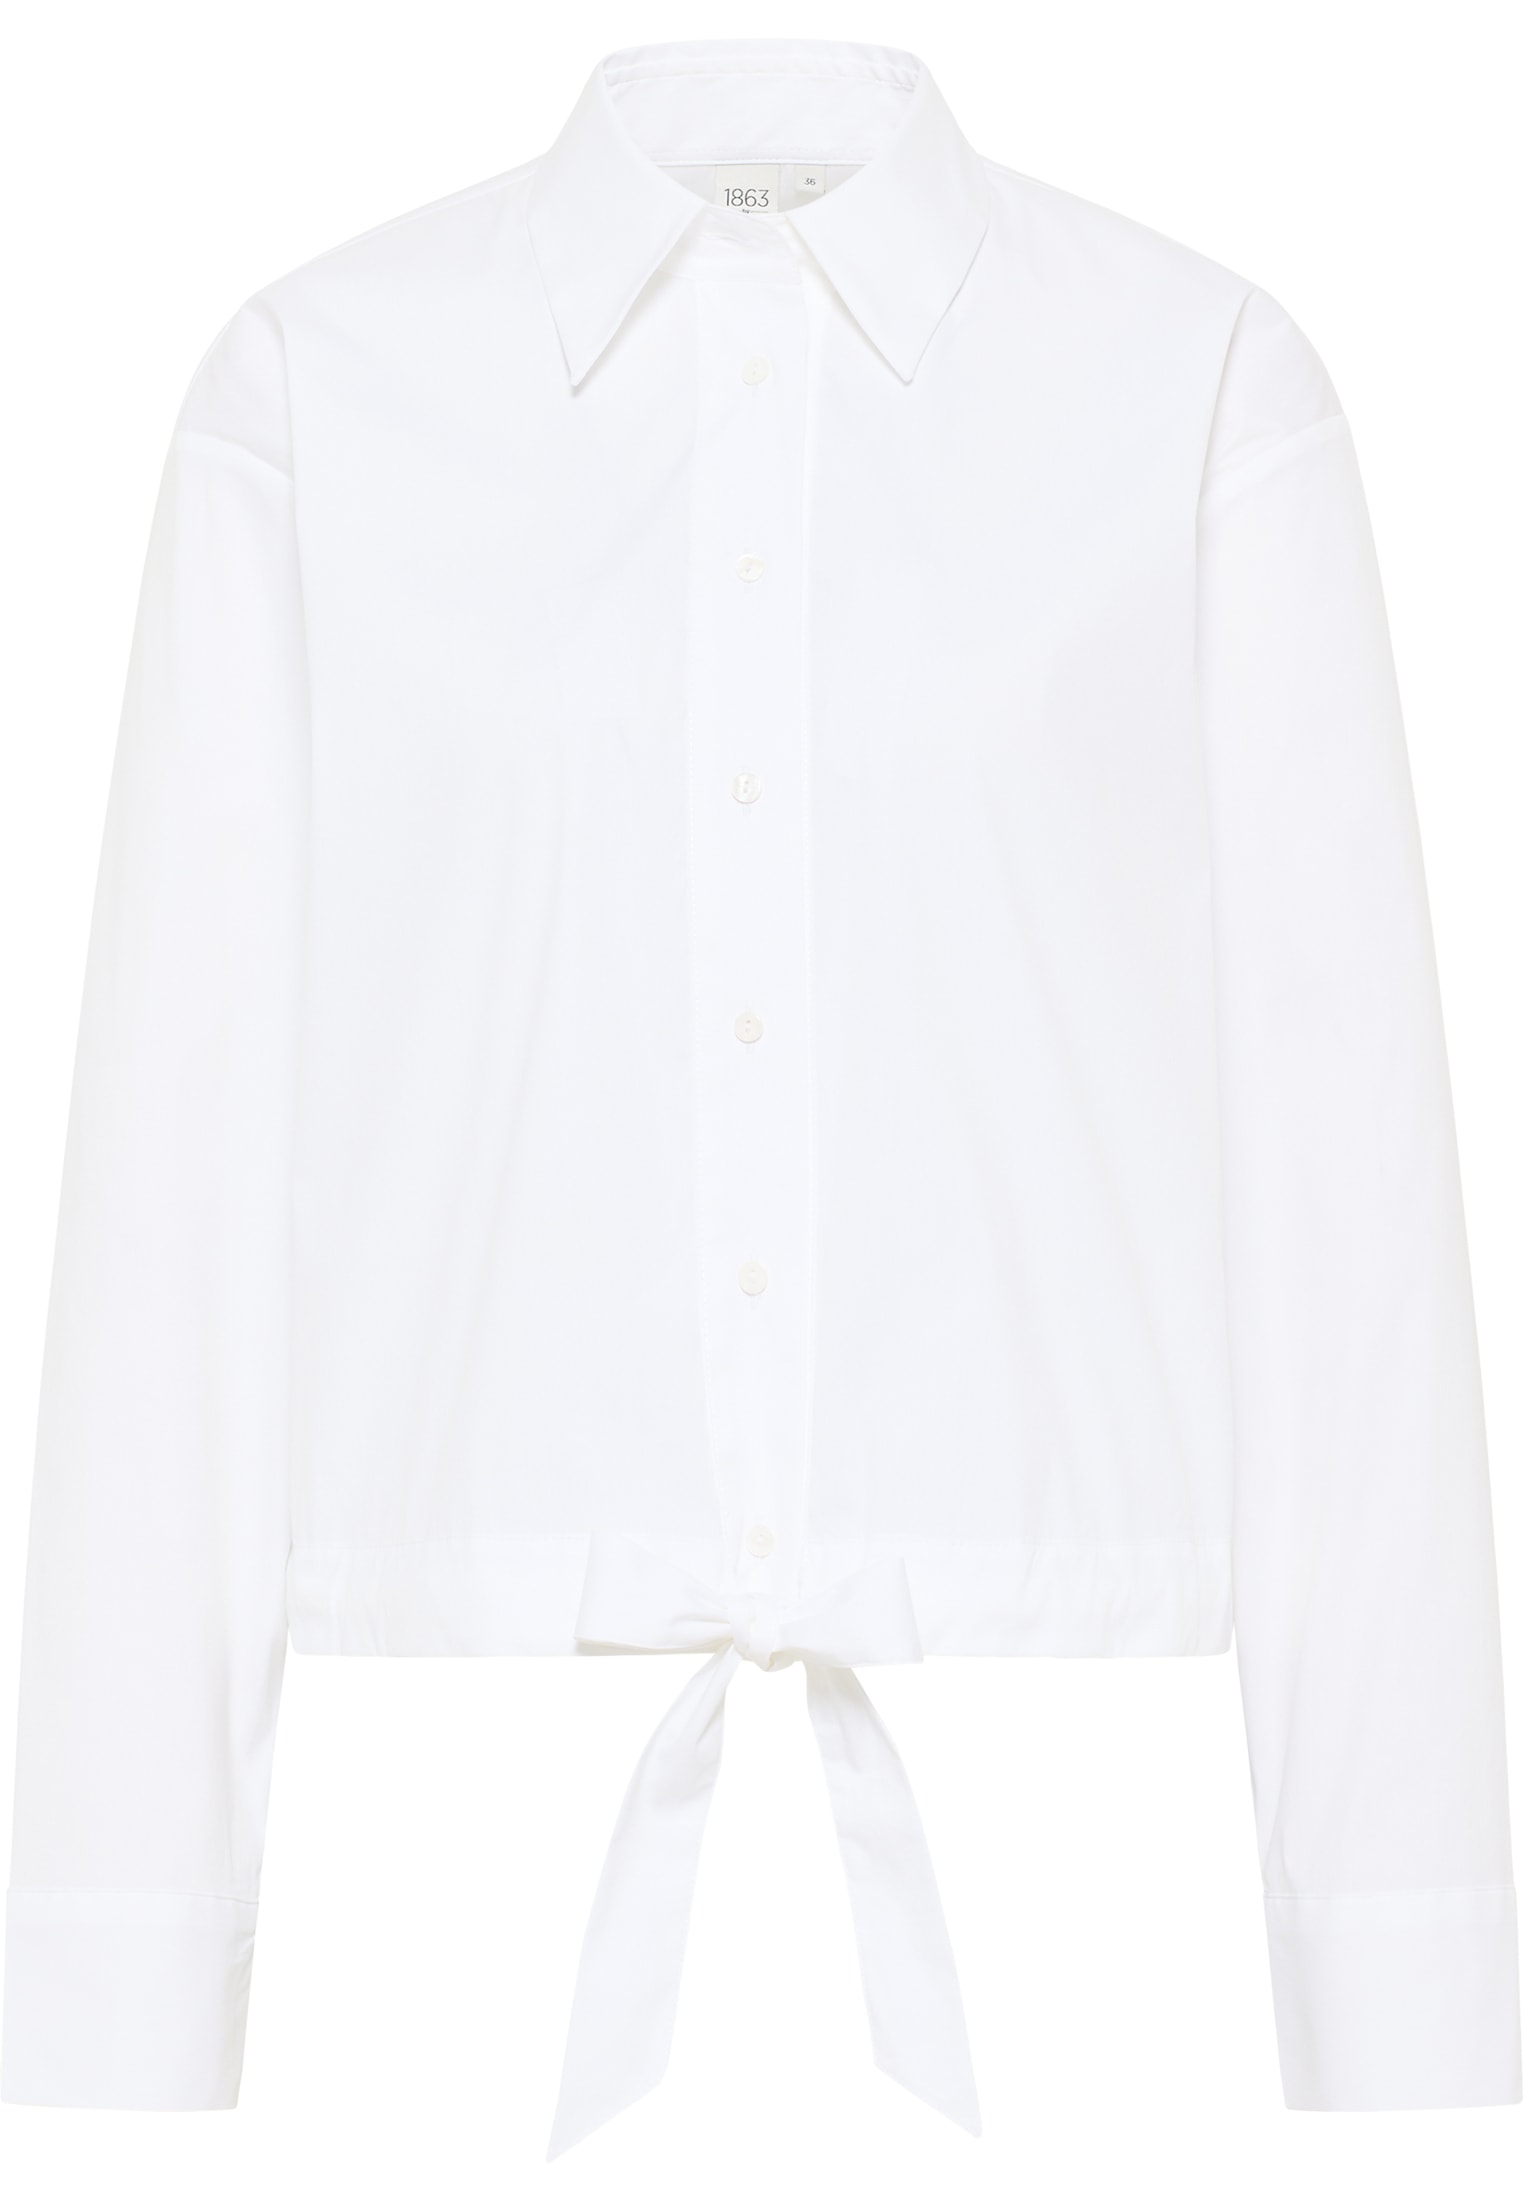 Shirt 2BL04027-00-01-34-1/1 in | | Langarm 34 | weiß Signature | weiß unifarben Bluse